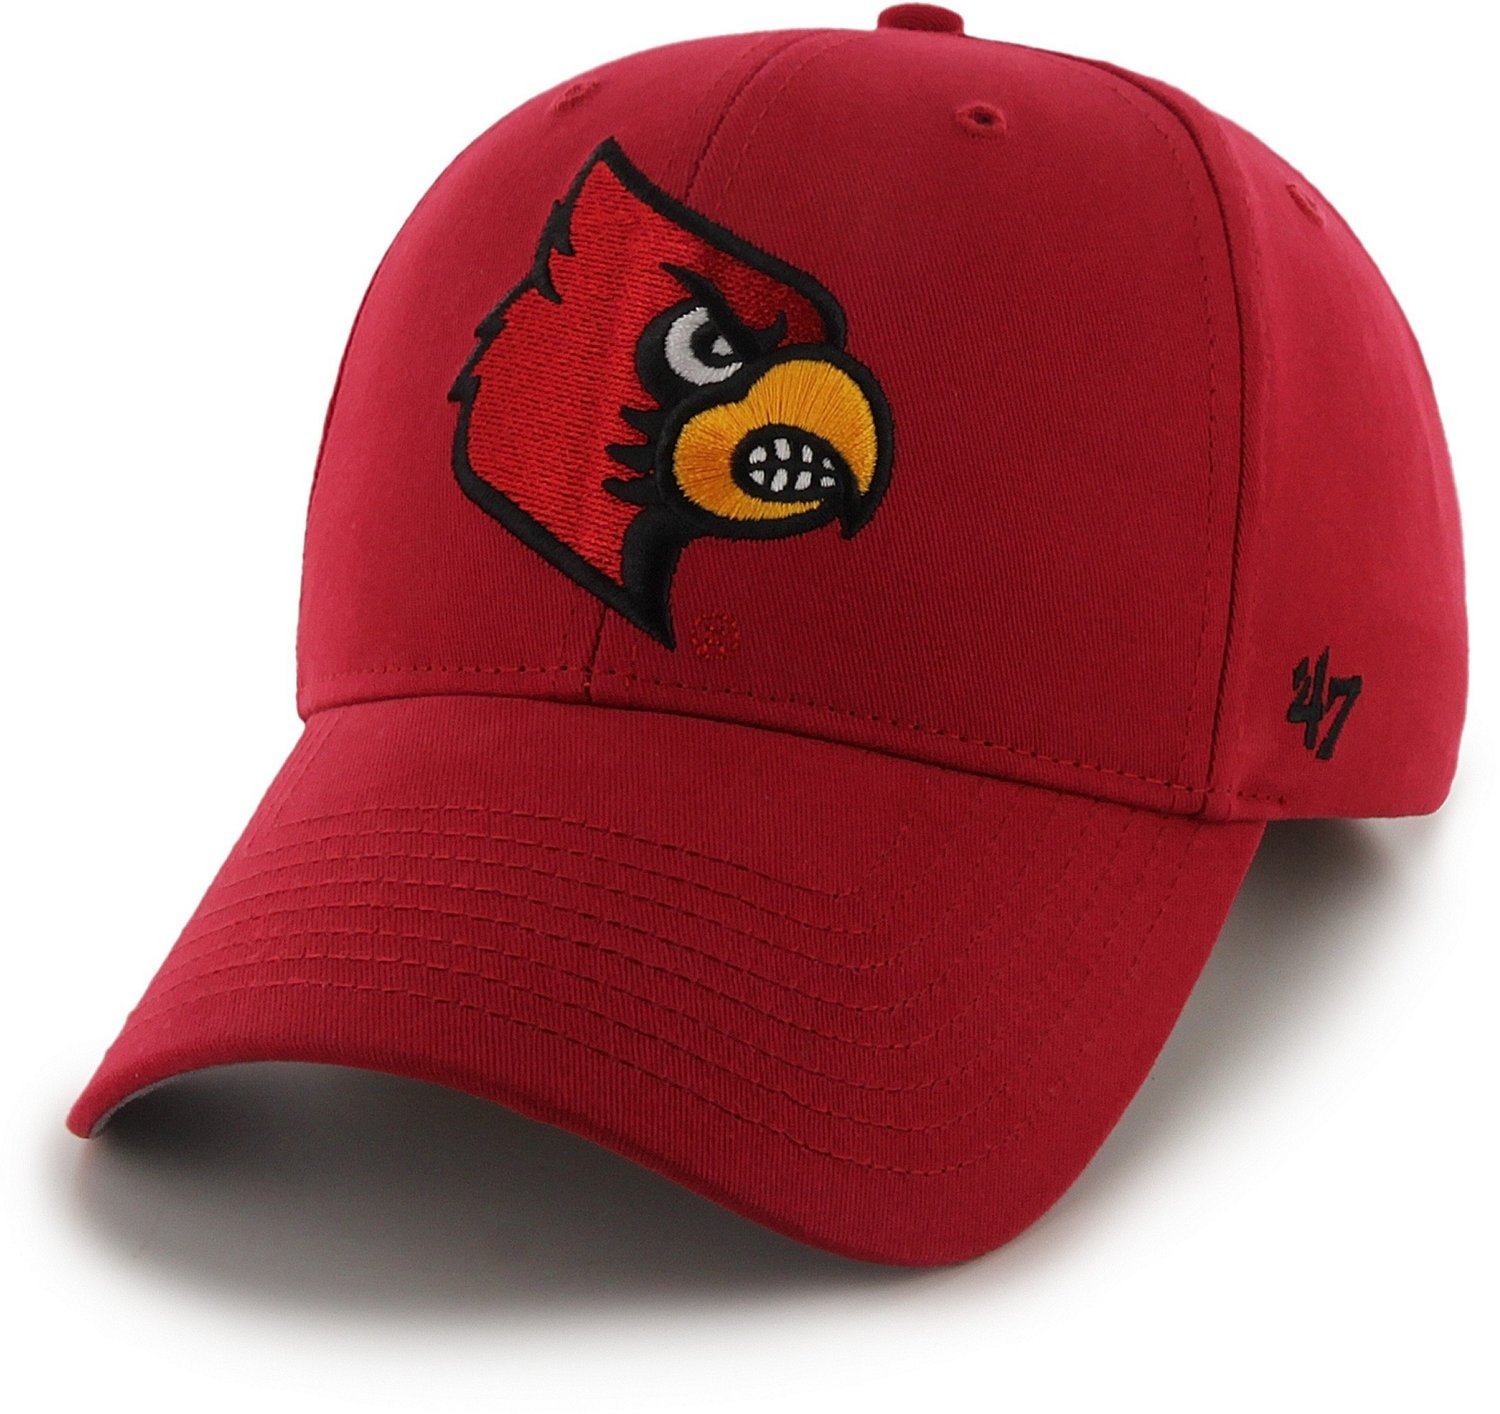 Louisville Cardinals Men's 47 Trucker Adjustable Hat